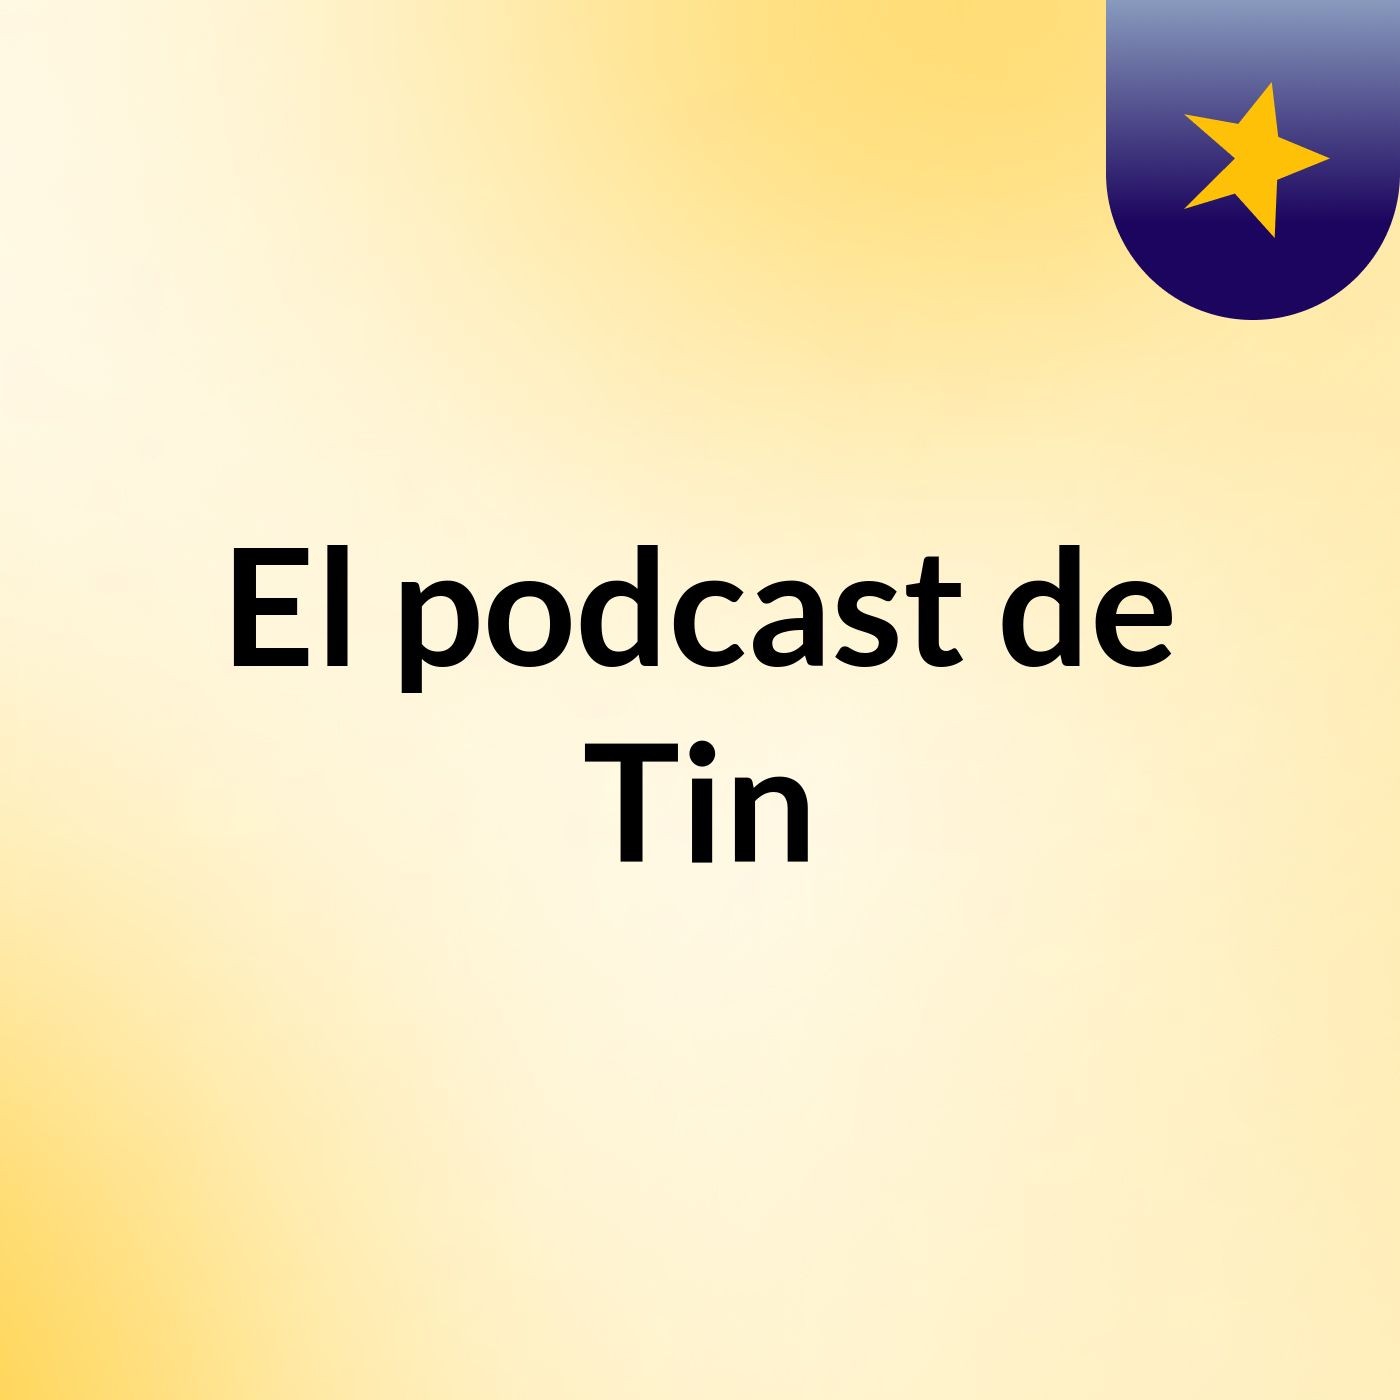 El podcast de Tin